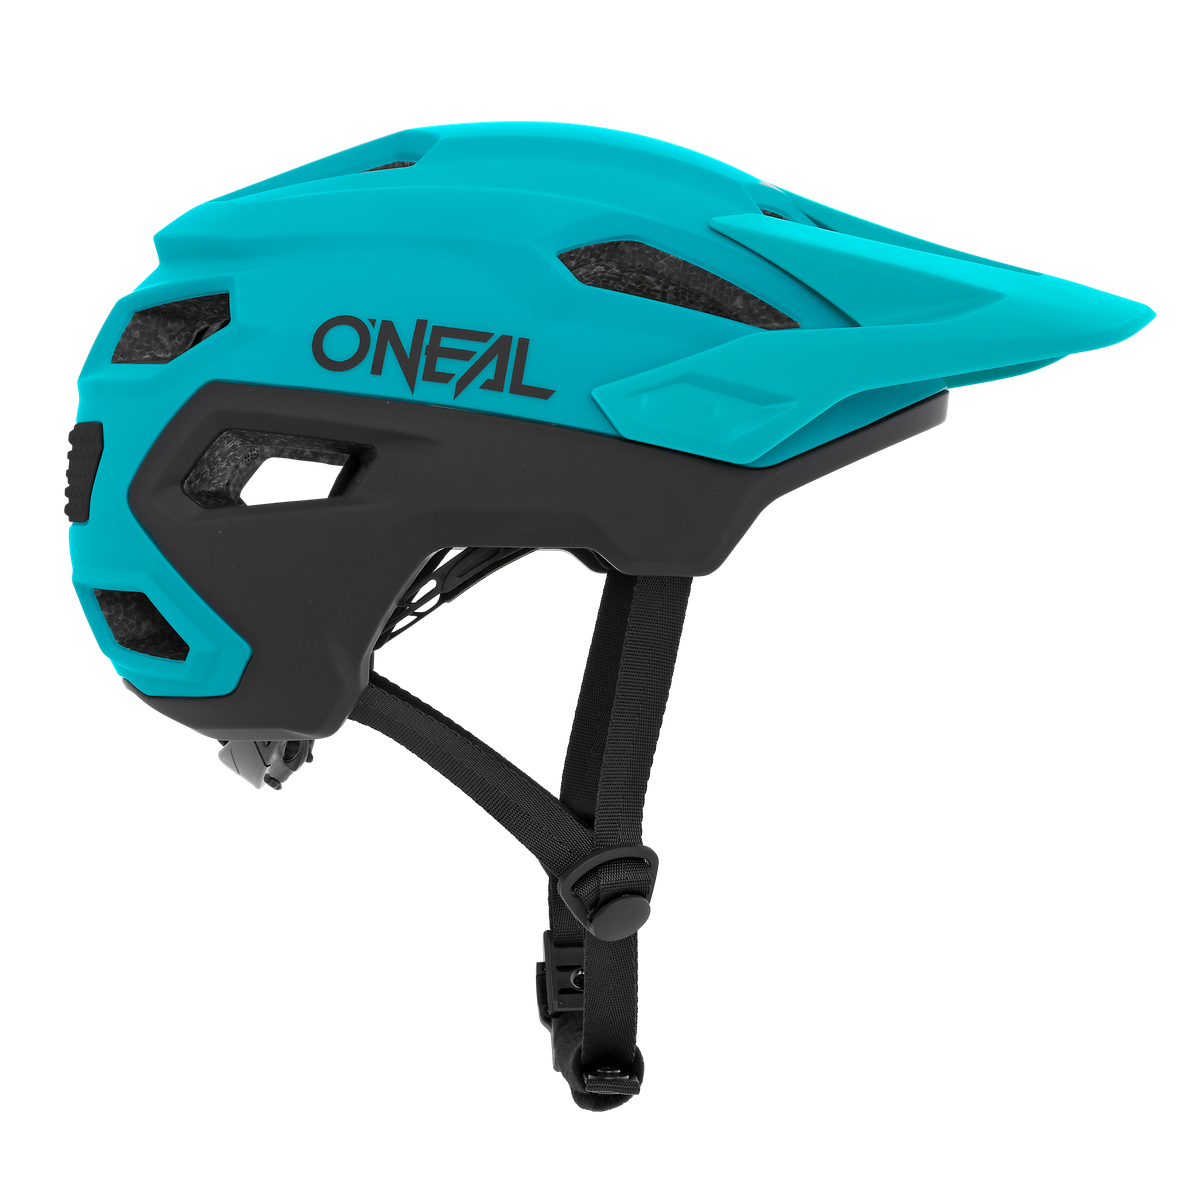 TRAILFINDER Helmet SPLIT teal S/M (54-58 cm) – AVAILABLE IN SELECTED BIKE SHOPS